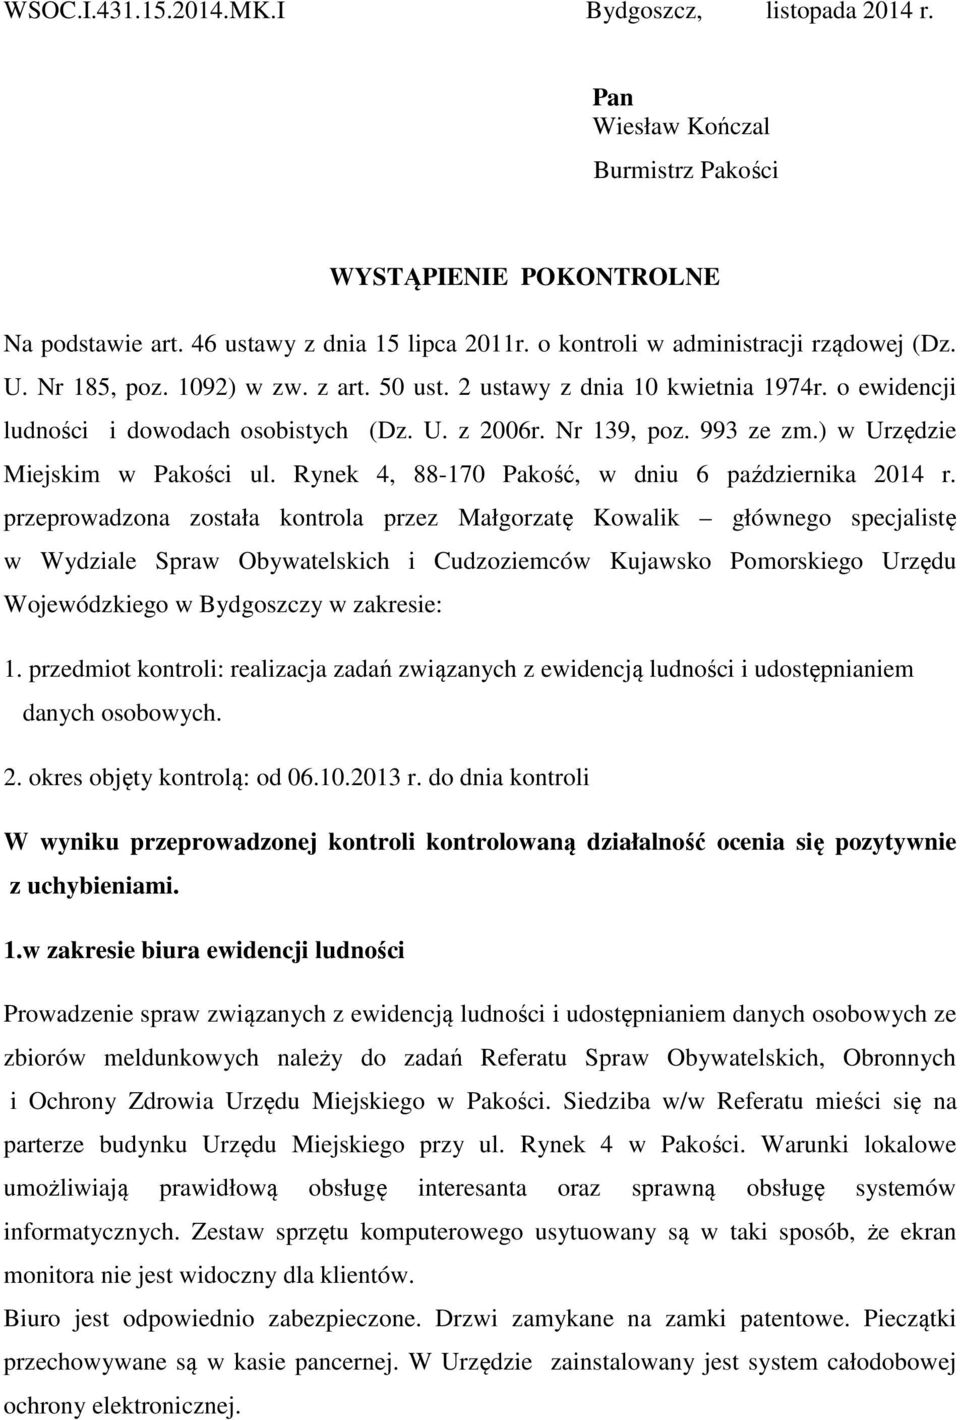 993 ze zm.) w Urzędzie Miejskim w Pakości ul. Rynek 4, 88-170 Pakość, w dniu 6 października 2014 r.